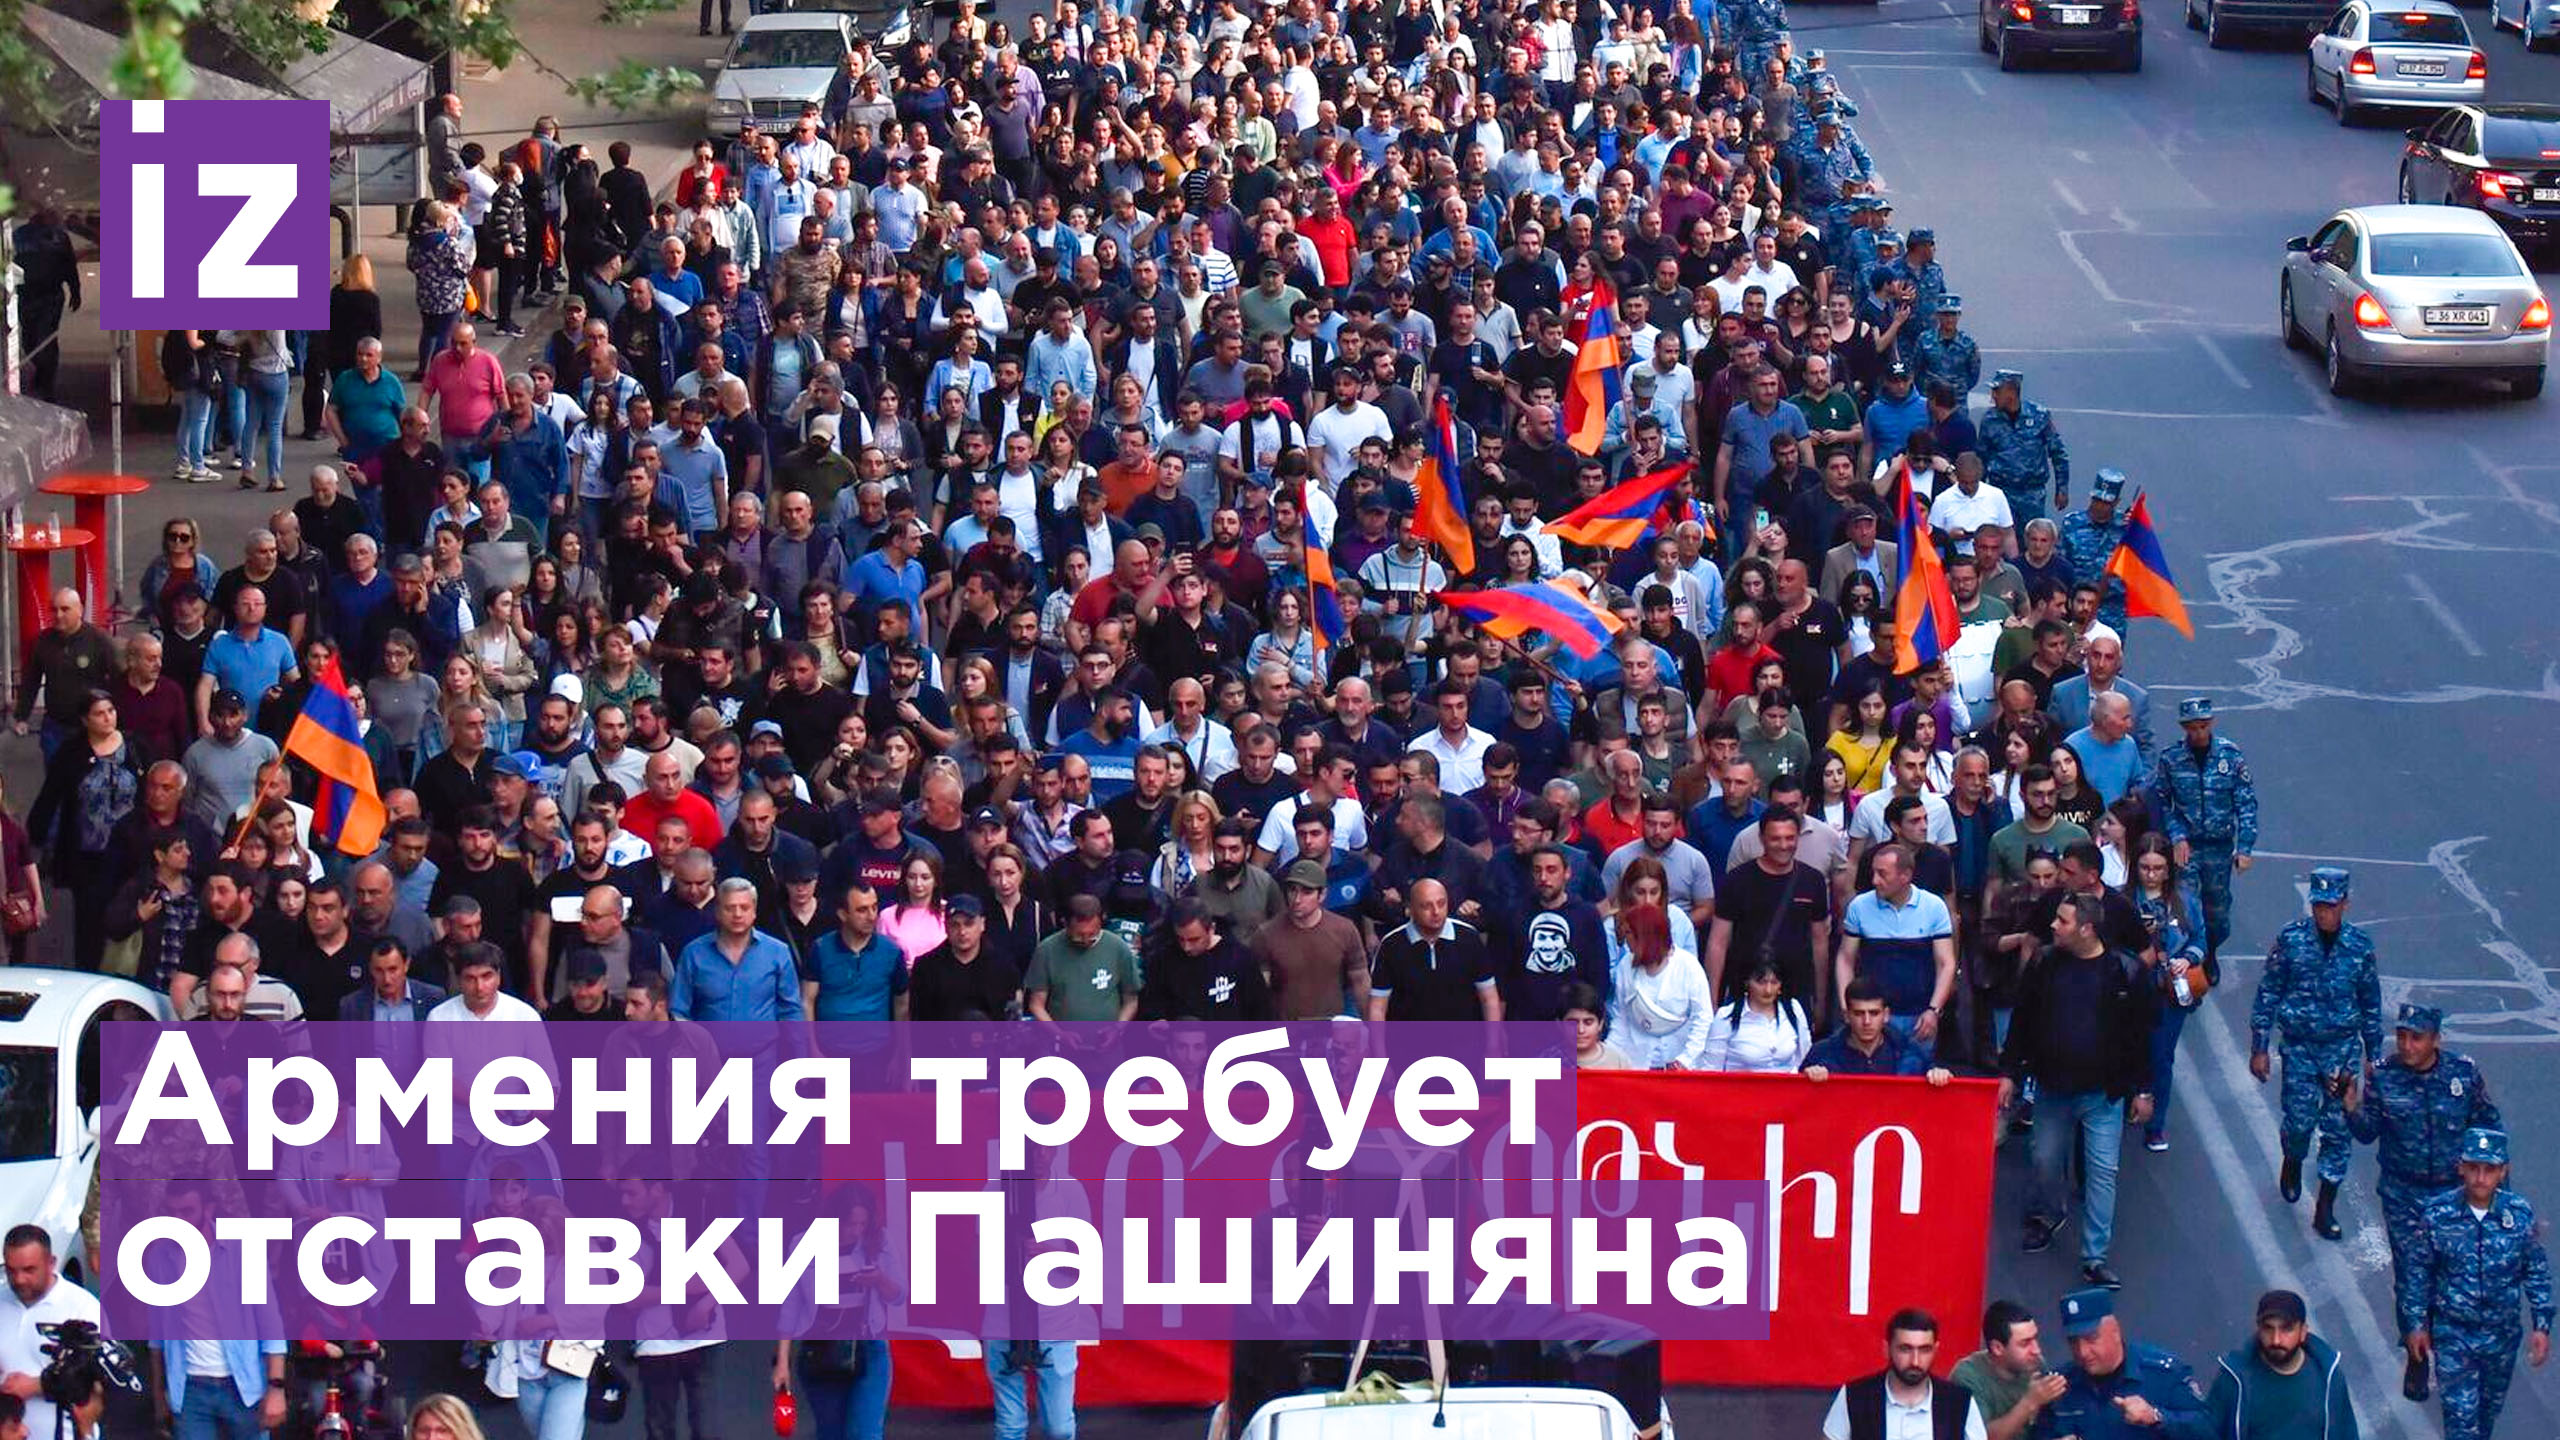 Оппозиция требует отставки Пашиняна — протестное шествие в Ереване / Известия